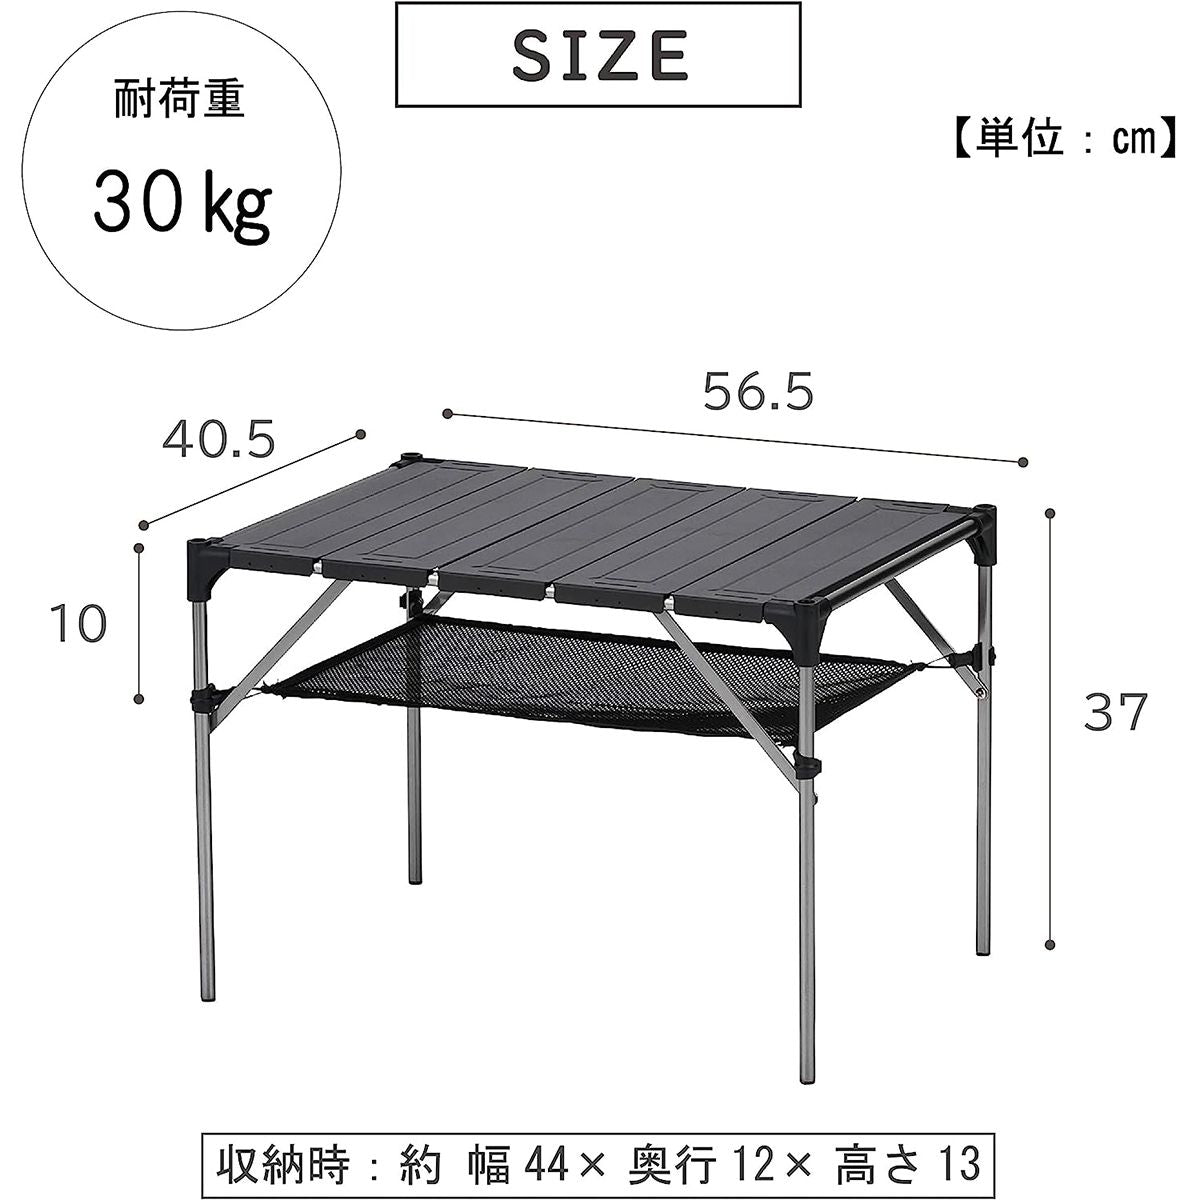 【OUTLET】【WEB限定】アウトドアテーブル 武田コーポレーション コンパクトアルミテーブル CAL21-56 アウトドア 軽量 56.5×40.5×37cm　324009